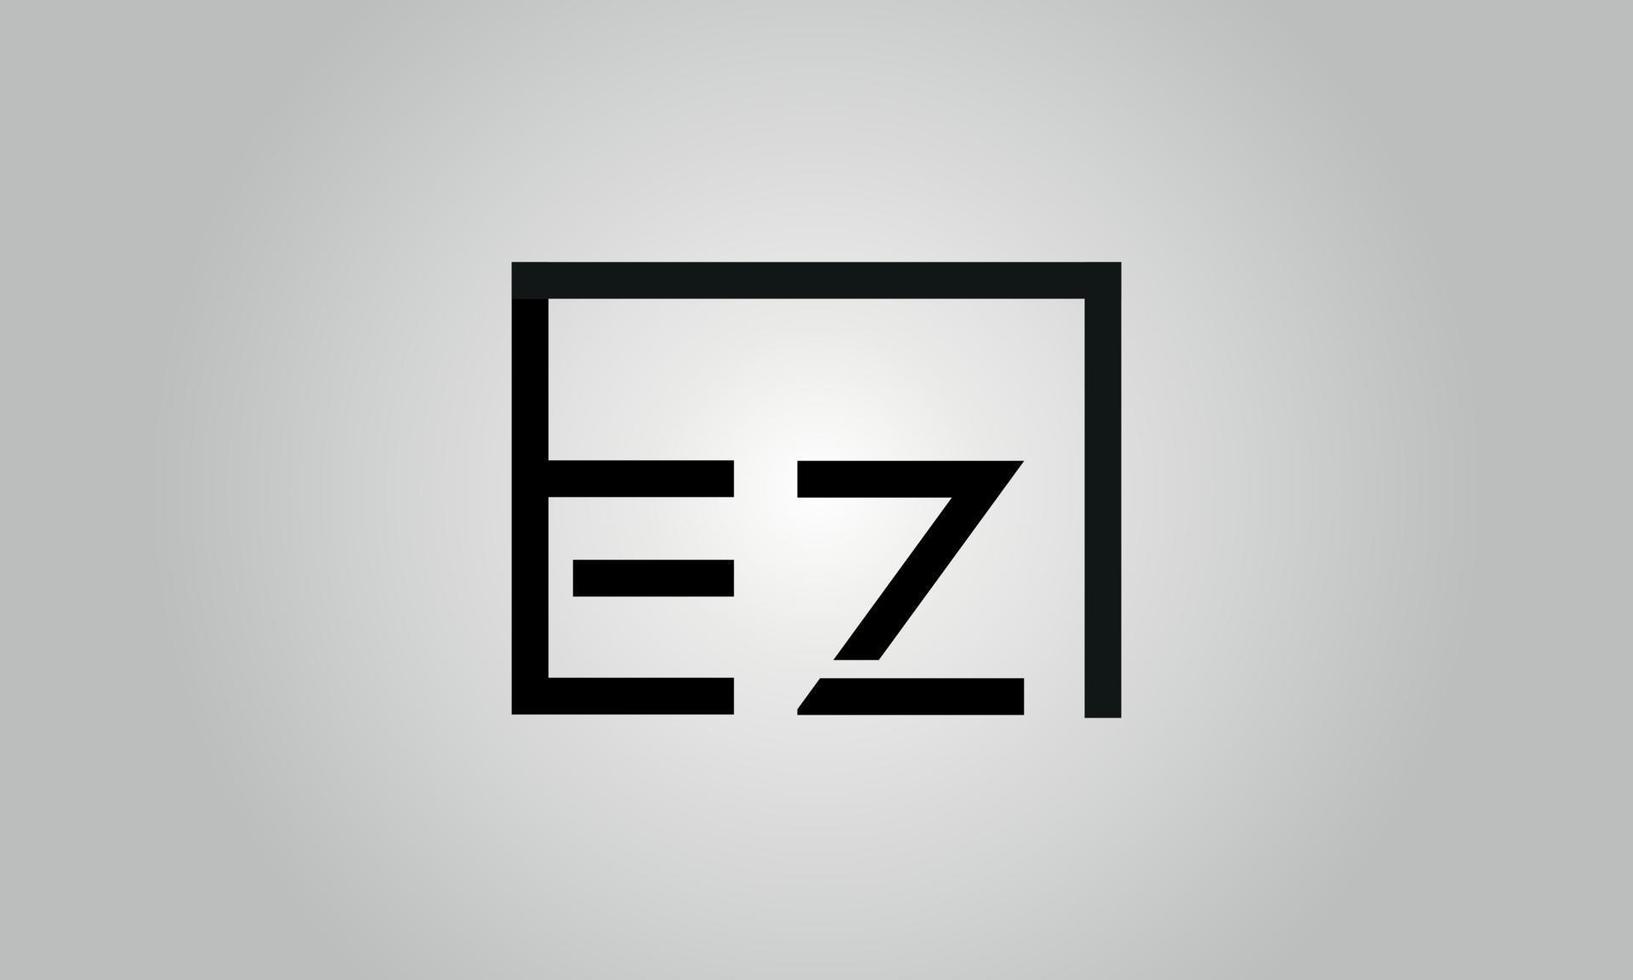 création de logo lettre ez. logo ez avec forme carrée dans le modèle vectoriel gratuit de couleurs noires.